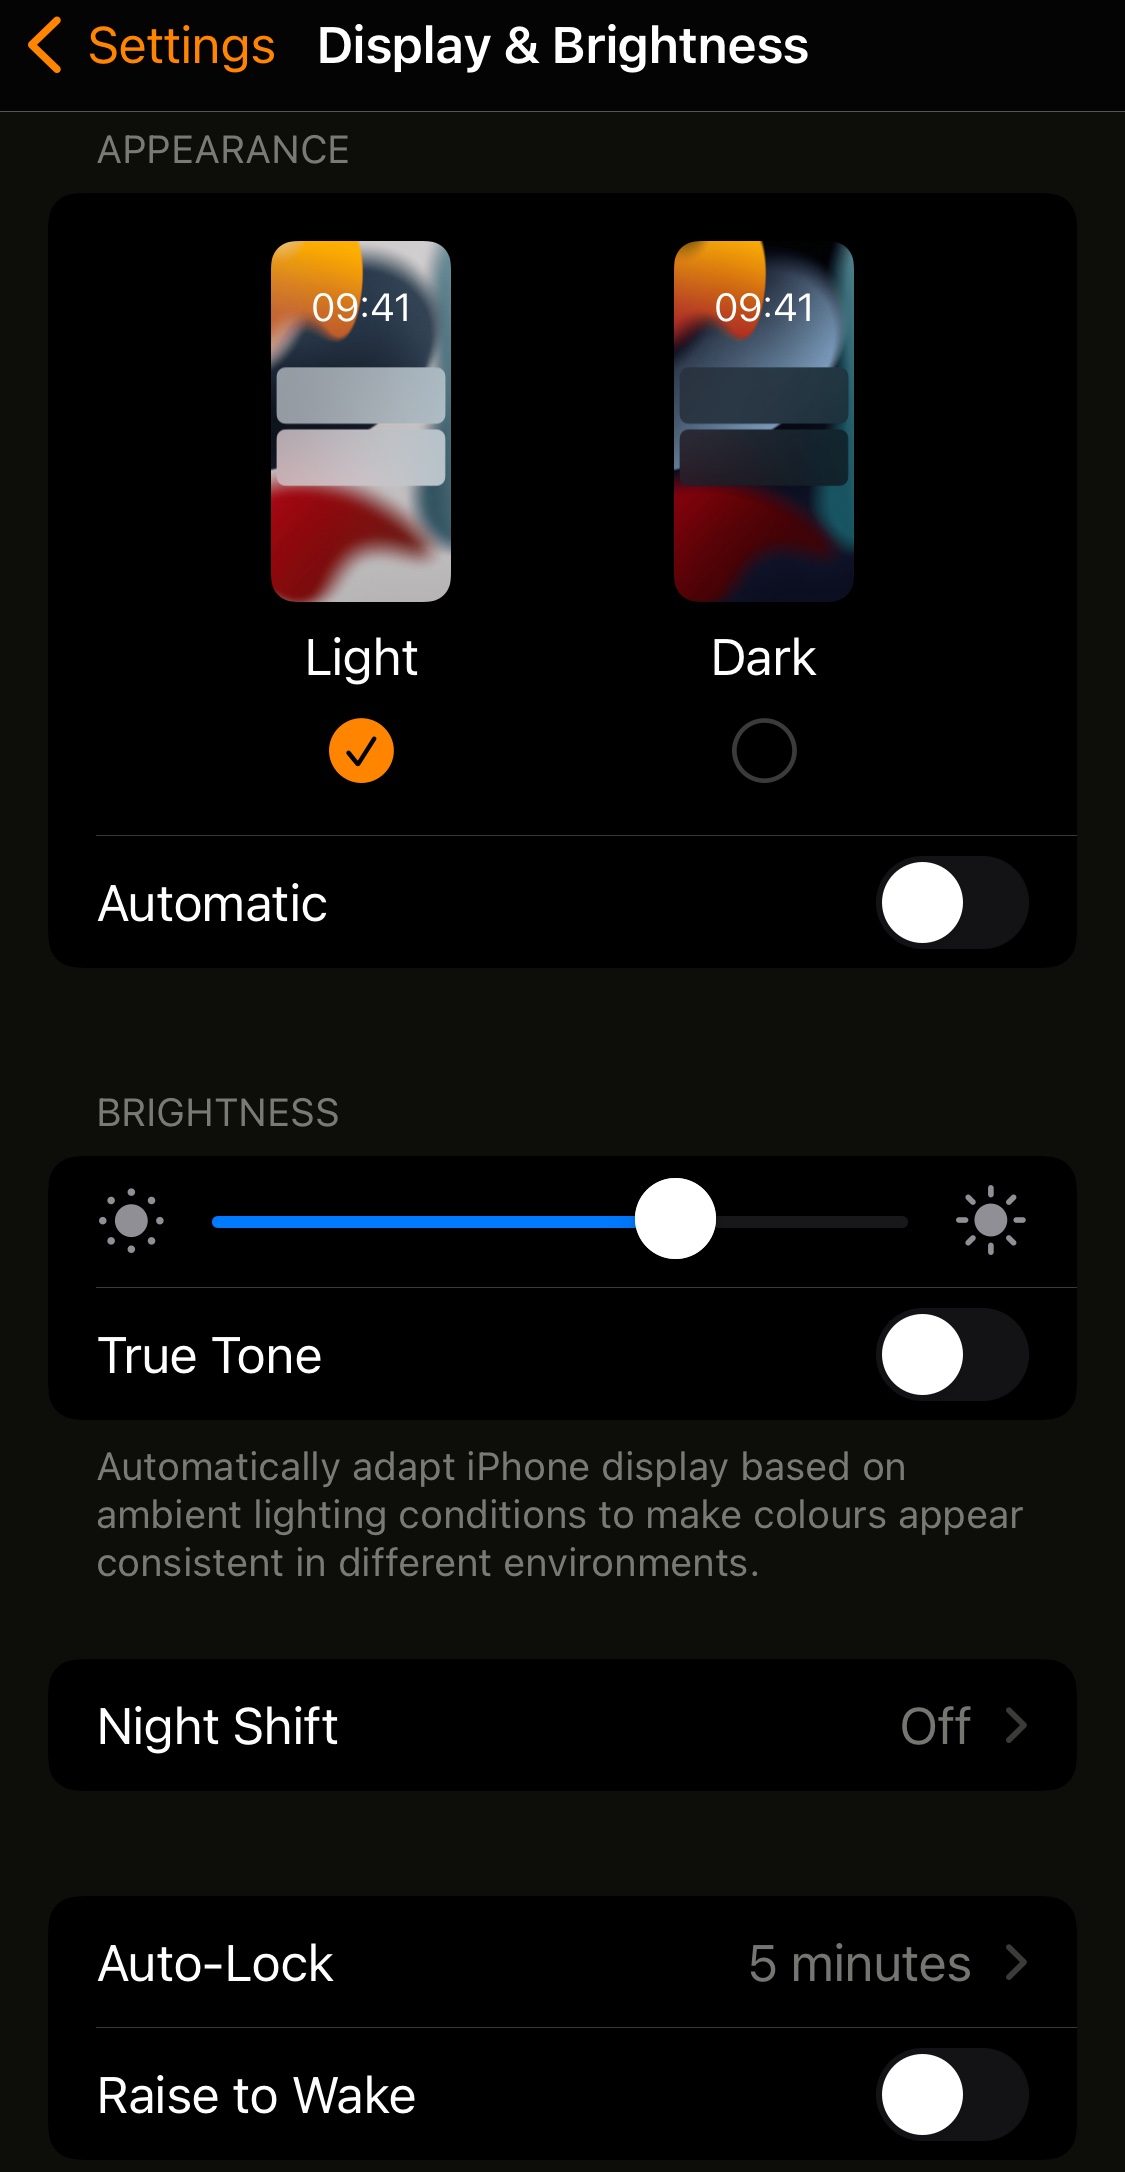 Nếu bạn đang tìm kiếm những ứng dụng có khung nền đen đẹp mắt để trang trí cho iPhone mình, hãy tham khảo ngay hình ảnh liên quan. Với những tấm hình nền đen tuyệt đẹp, bạn sẽ luôn có một giao diện màn hình đầy cá tính và cuốn hút.